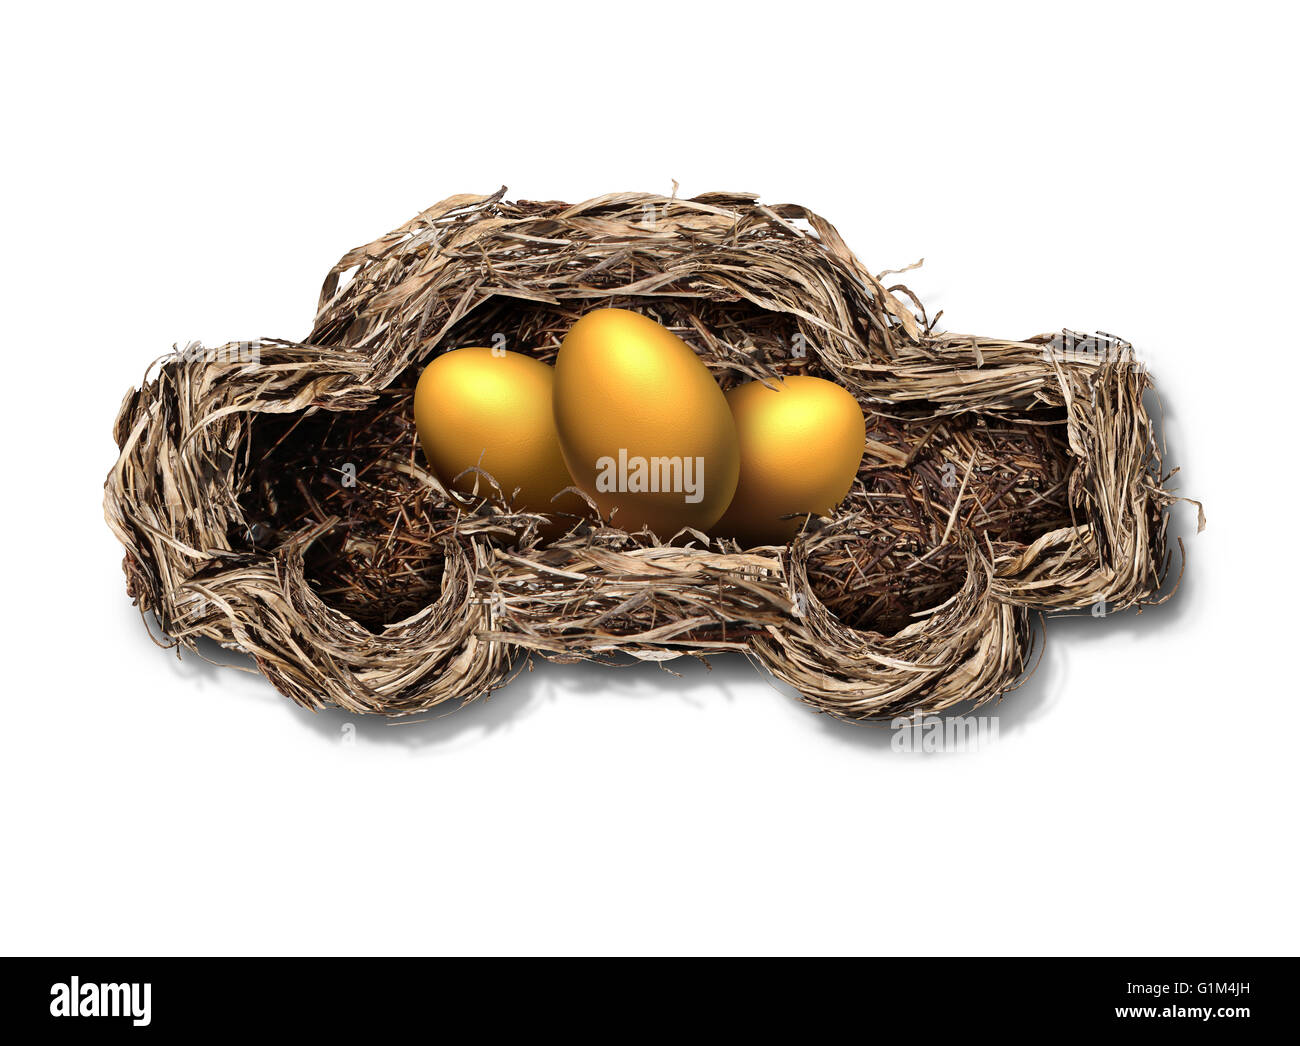 Auto finanziamento nozione come un nido conformata come un automobile o auto con golden uova all'interno come un simbolo di finanziaria per investimenti di trasporto o pagamenti di leasing con 3D'illustrazione degli elementi. Foto Stock